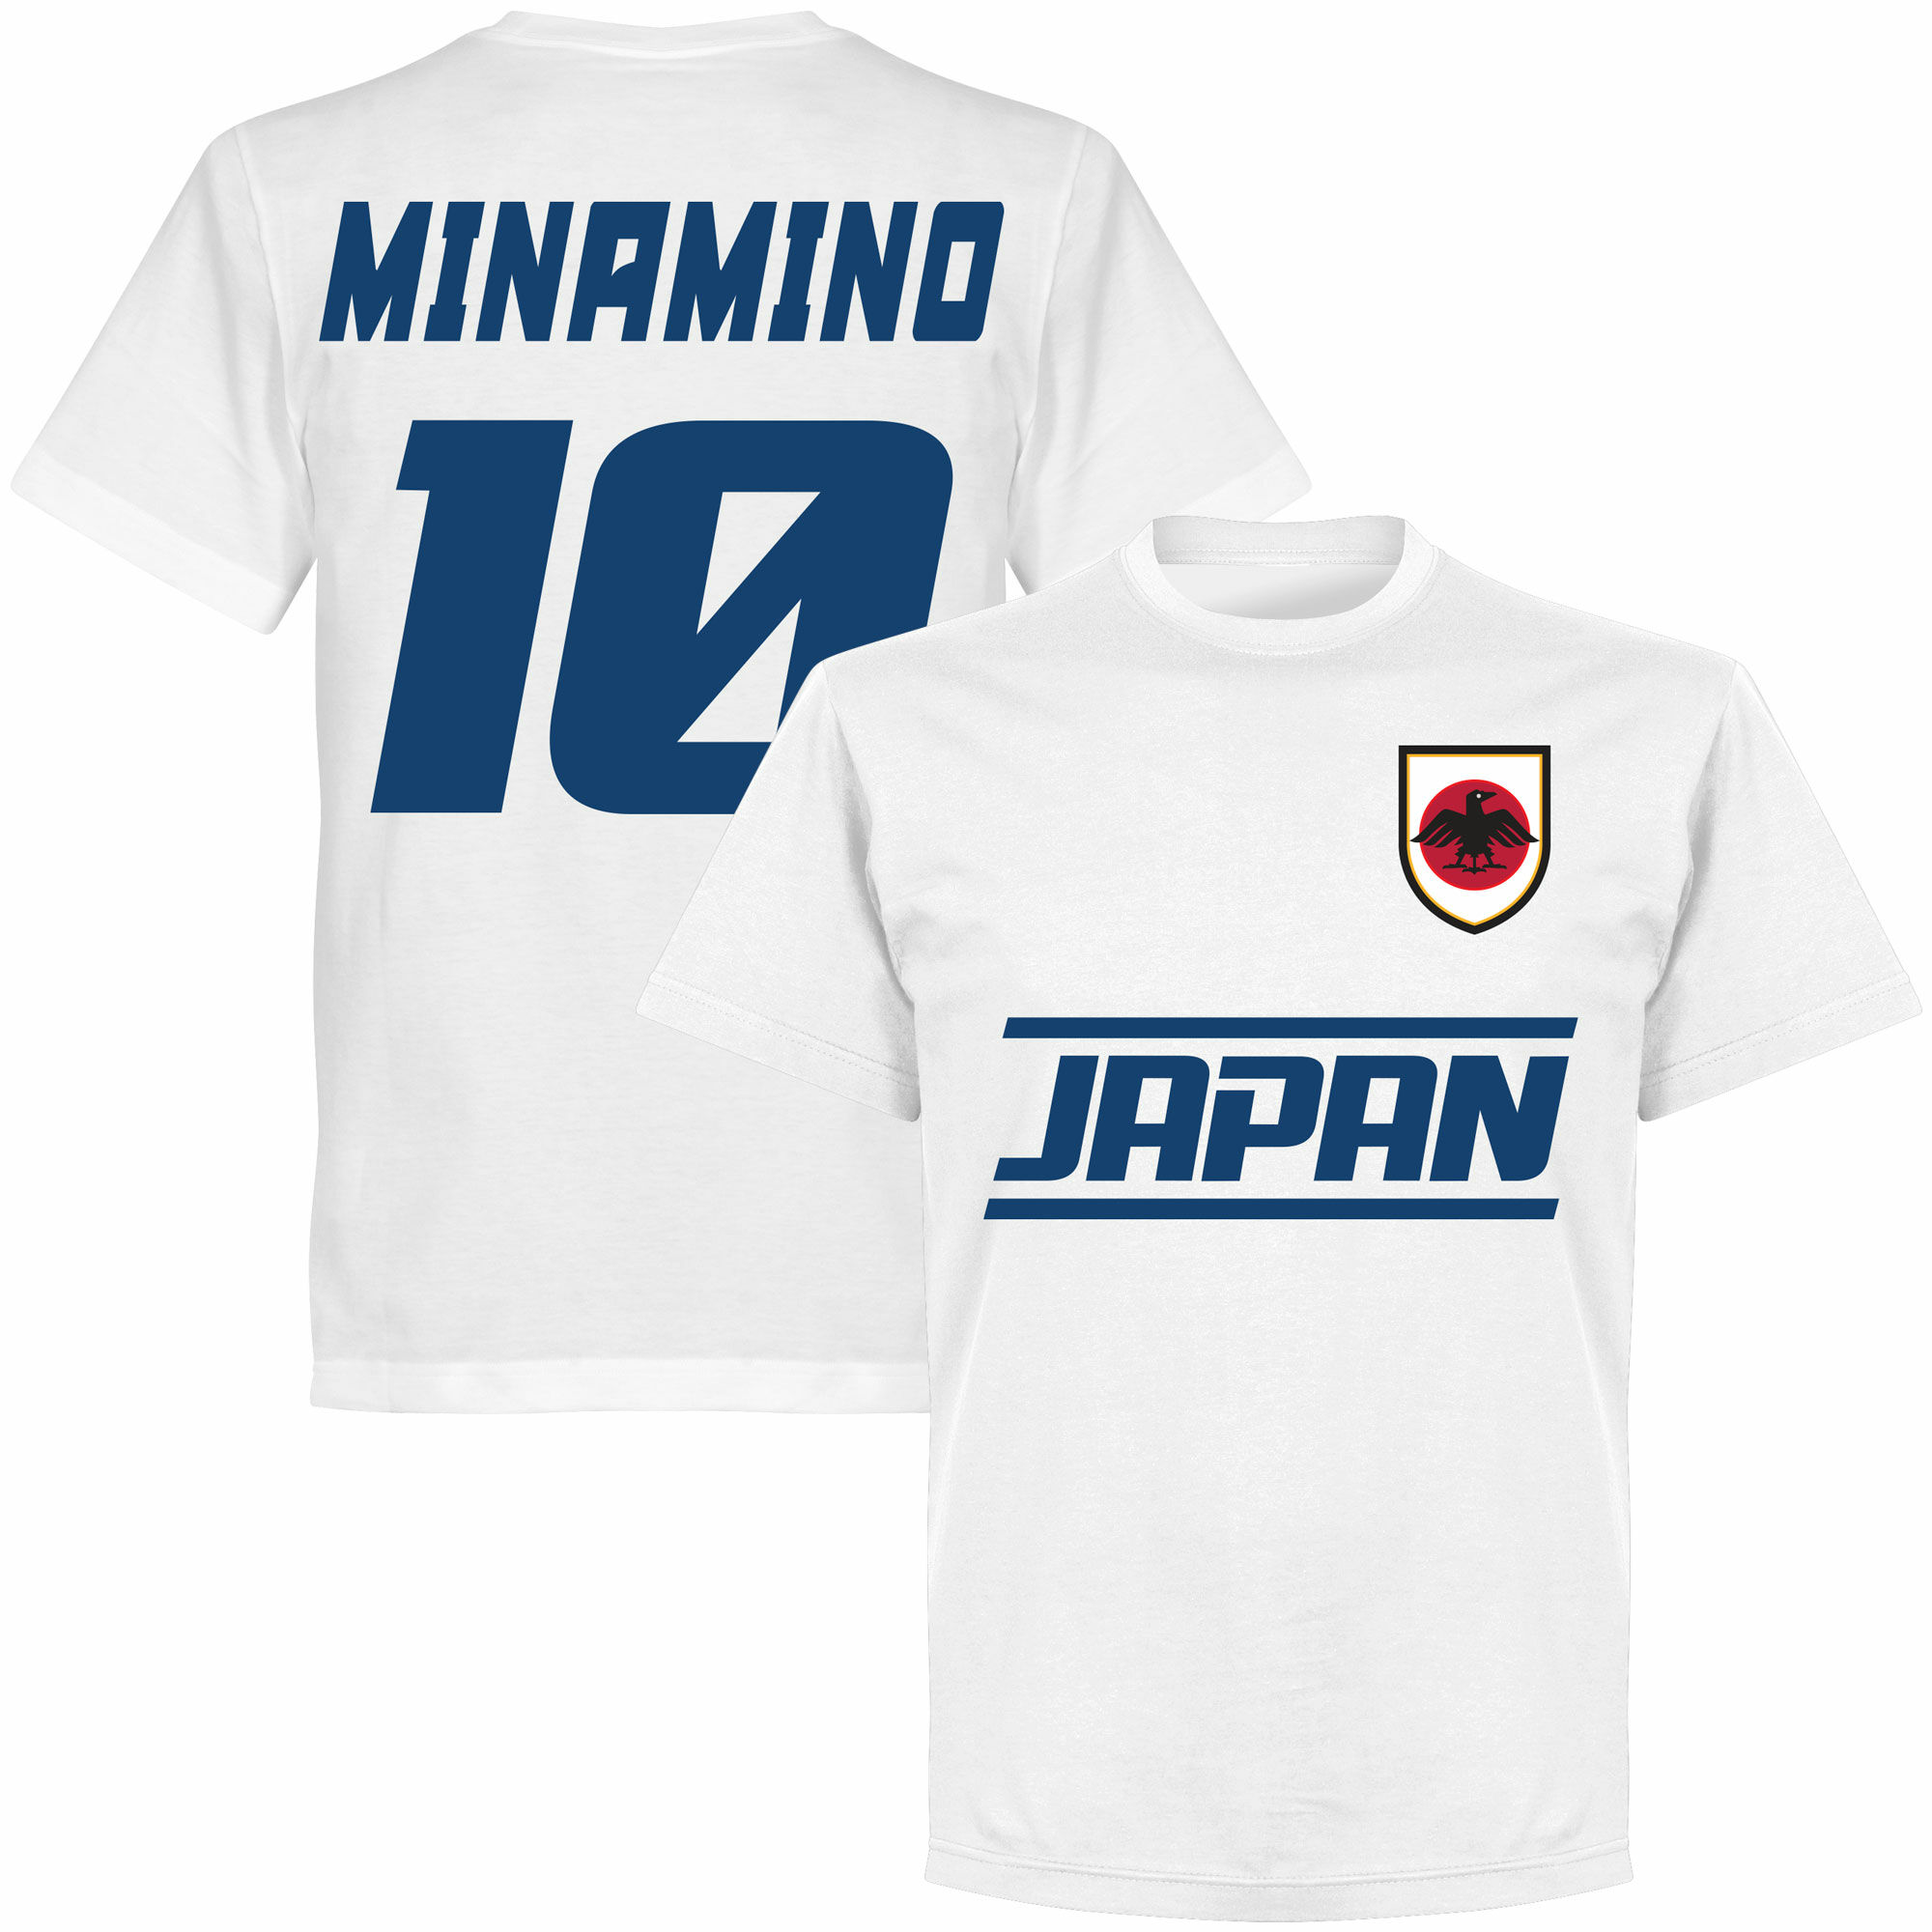 Japonsko - Tričko - Takumi Minamino, bílé, číslo 10